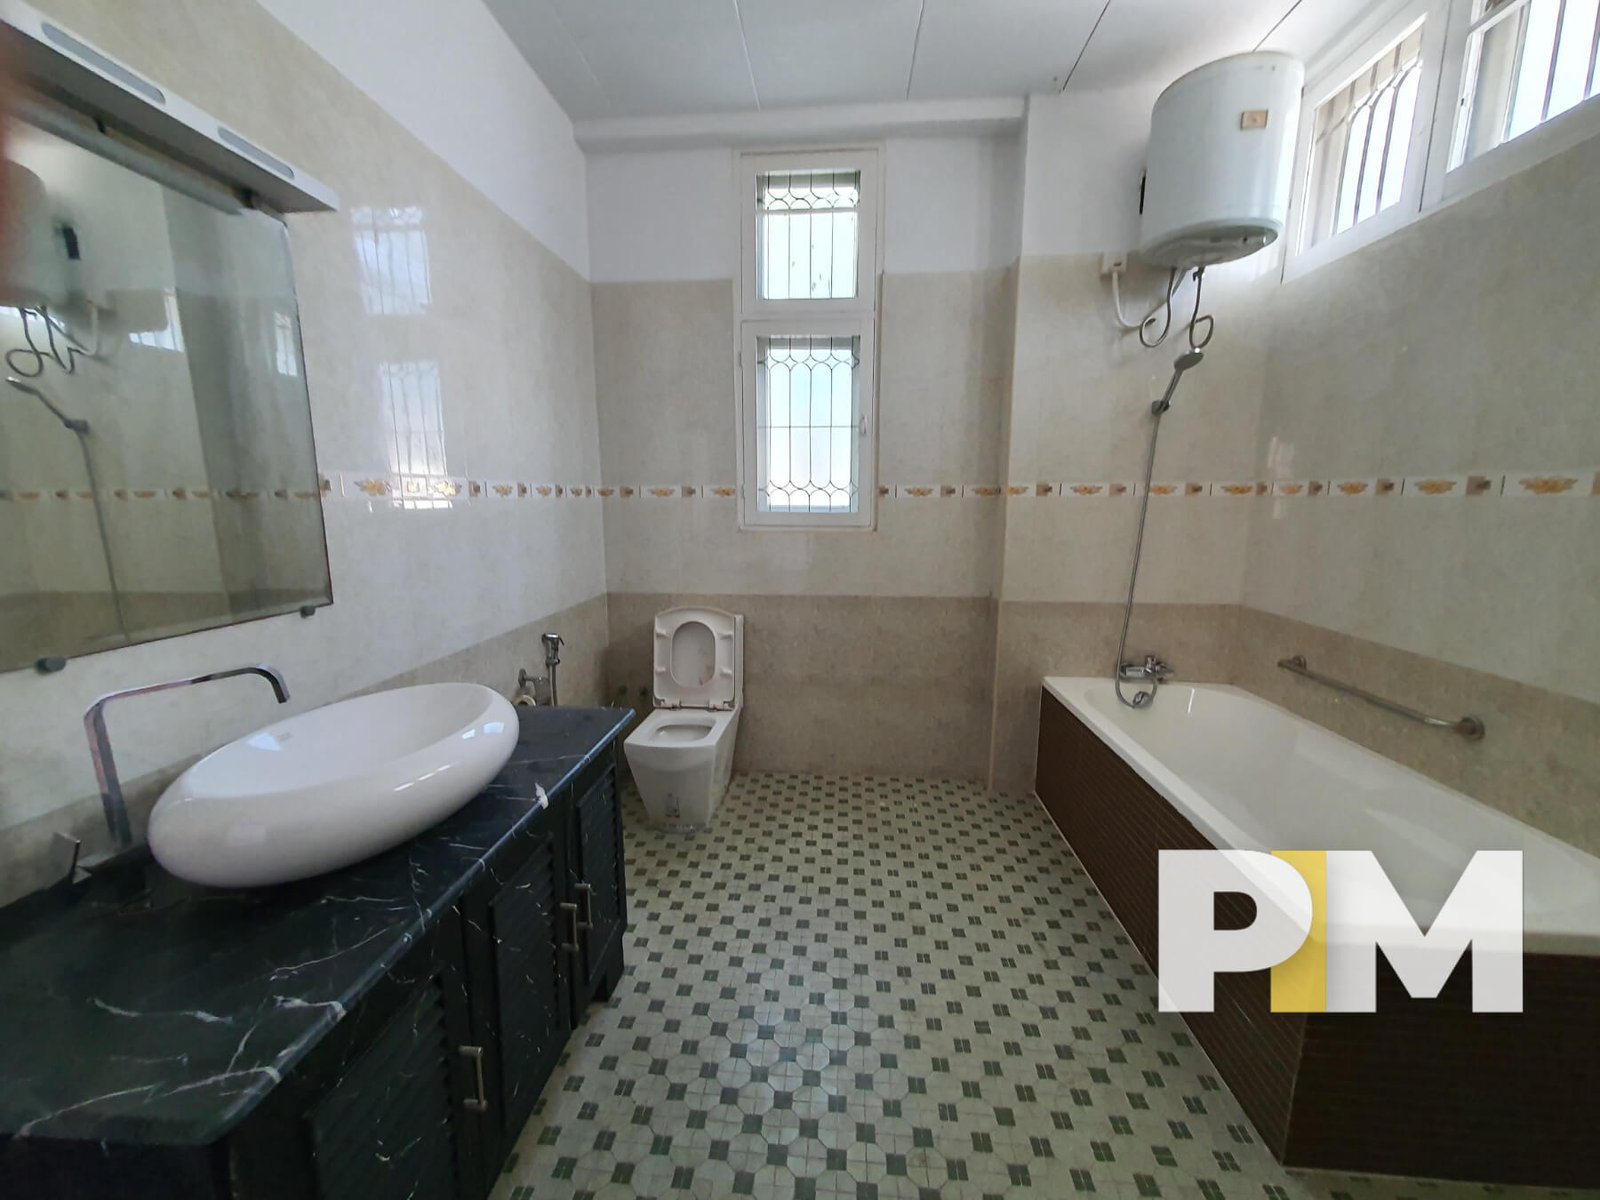 Bathroom with bath tub - Real Estate in Yangon (2)